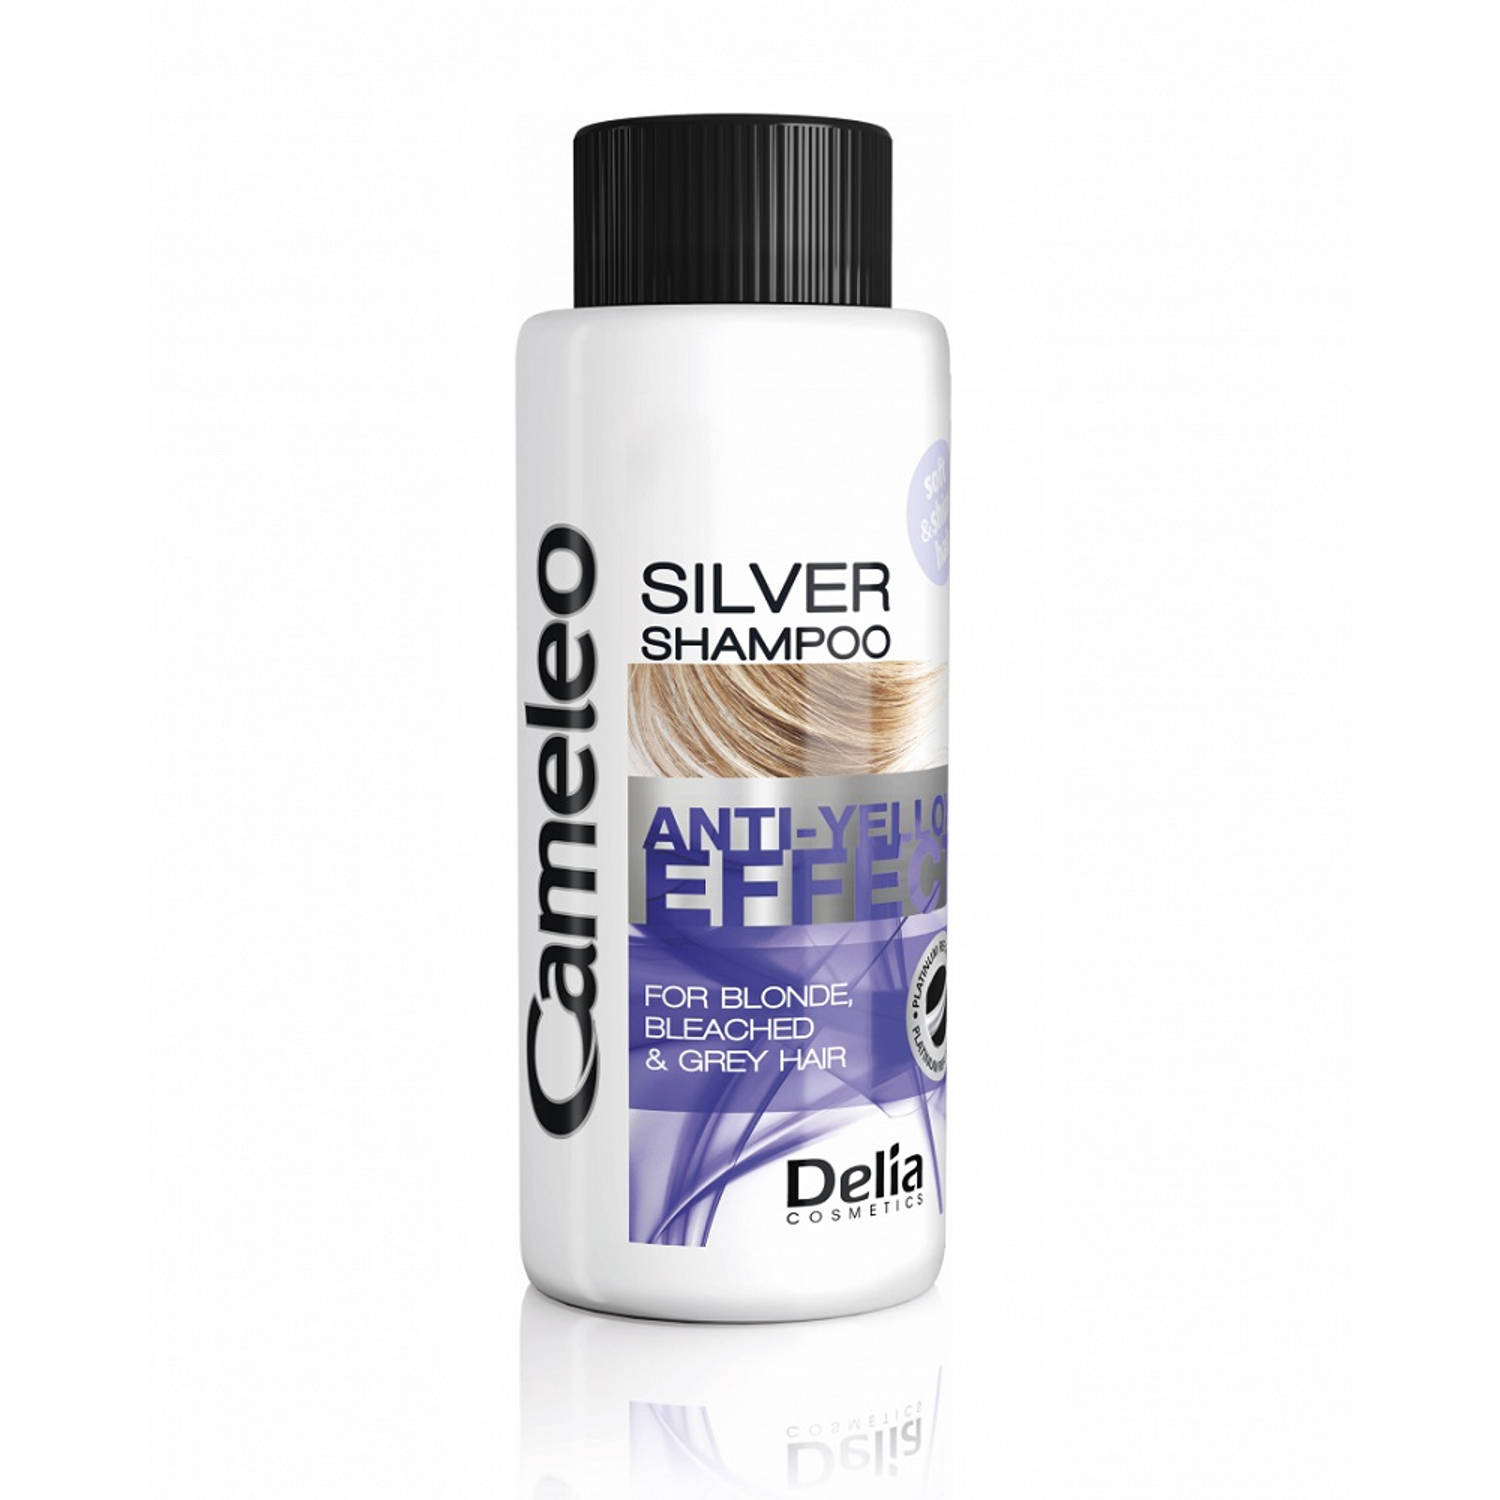 Anti-Yellow Effect Silver Shampoo mini shampoo voor blond haar tegen vergeling 50ml